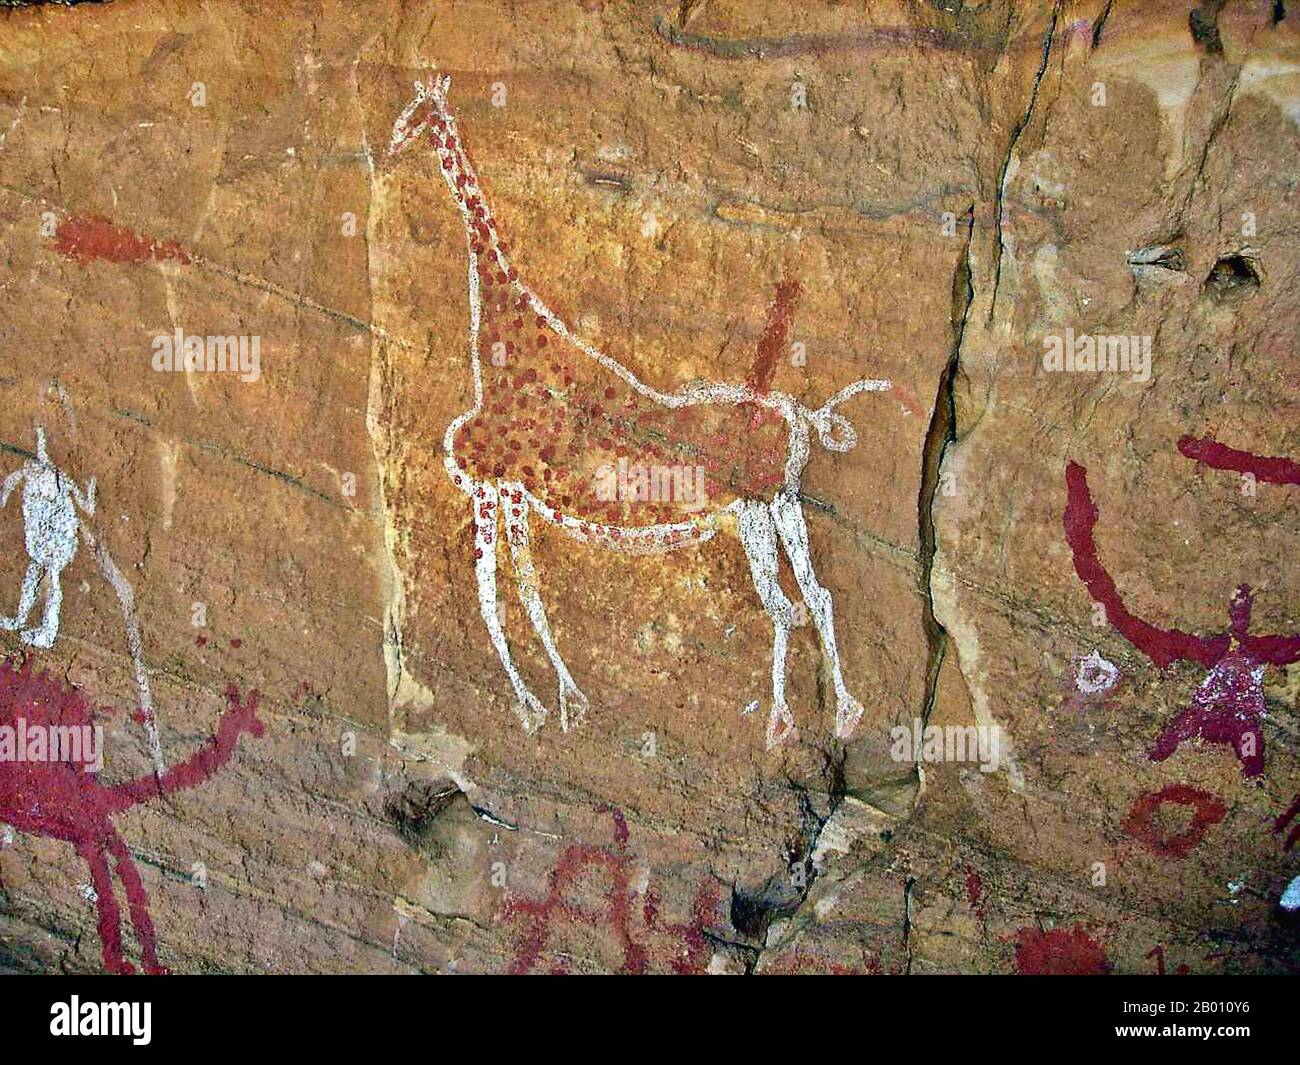 Algerien: Felsmalerei einer Giraffe, Tassili (Inauouanrhat), ca. 6000-4000 BCE. Tassili n'Ajjer ist ein Gebirgsmassiv in der Sahara im Südosten Algeriens, Nordafrika. Es erstreckt sich über ca. 500 km. Die nächste Stadt ist Djanet, etwa 10 km südwestlich der Reichweite. Ein großer Teil der Reichweite, einschließlich der Zypressen und archäologischen Stätten, ist in einem Nationalpark, Biosphärenreservat und Weltkulturerbe, genannt Tassili n'Ajjer Nationalpark geschützt. Der Bereich ist bekannt für seine prähistorischen Felsmalereien und andere antike archäologische Stätten, aus der jungsteinzeit. Stockfoto